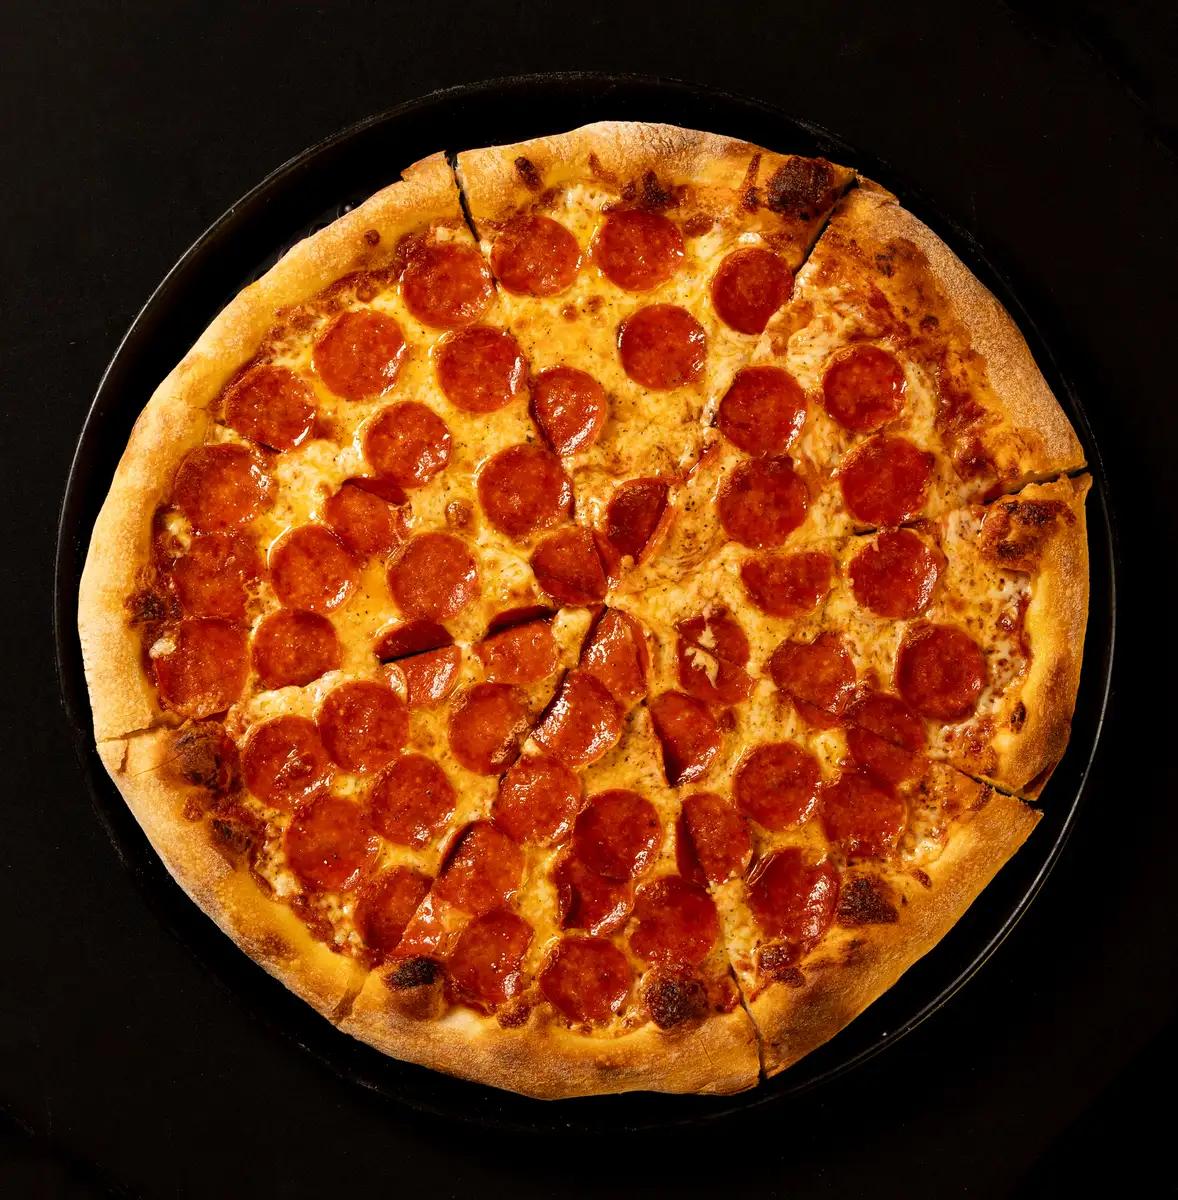 fotos de pizza - Cómo sacar fotos a la pizza